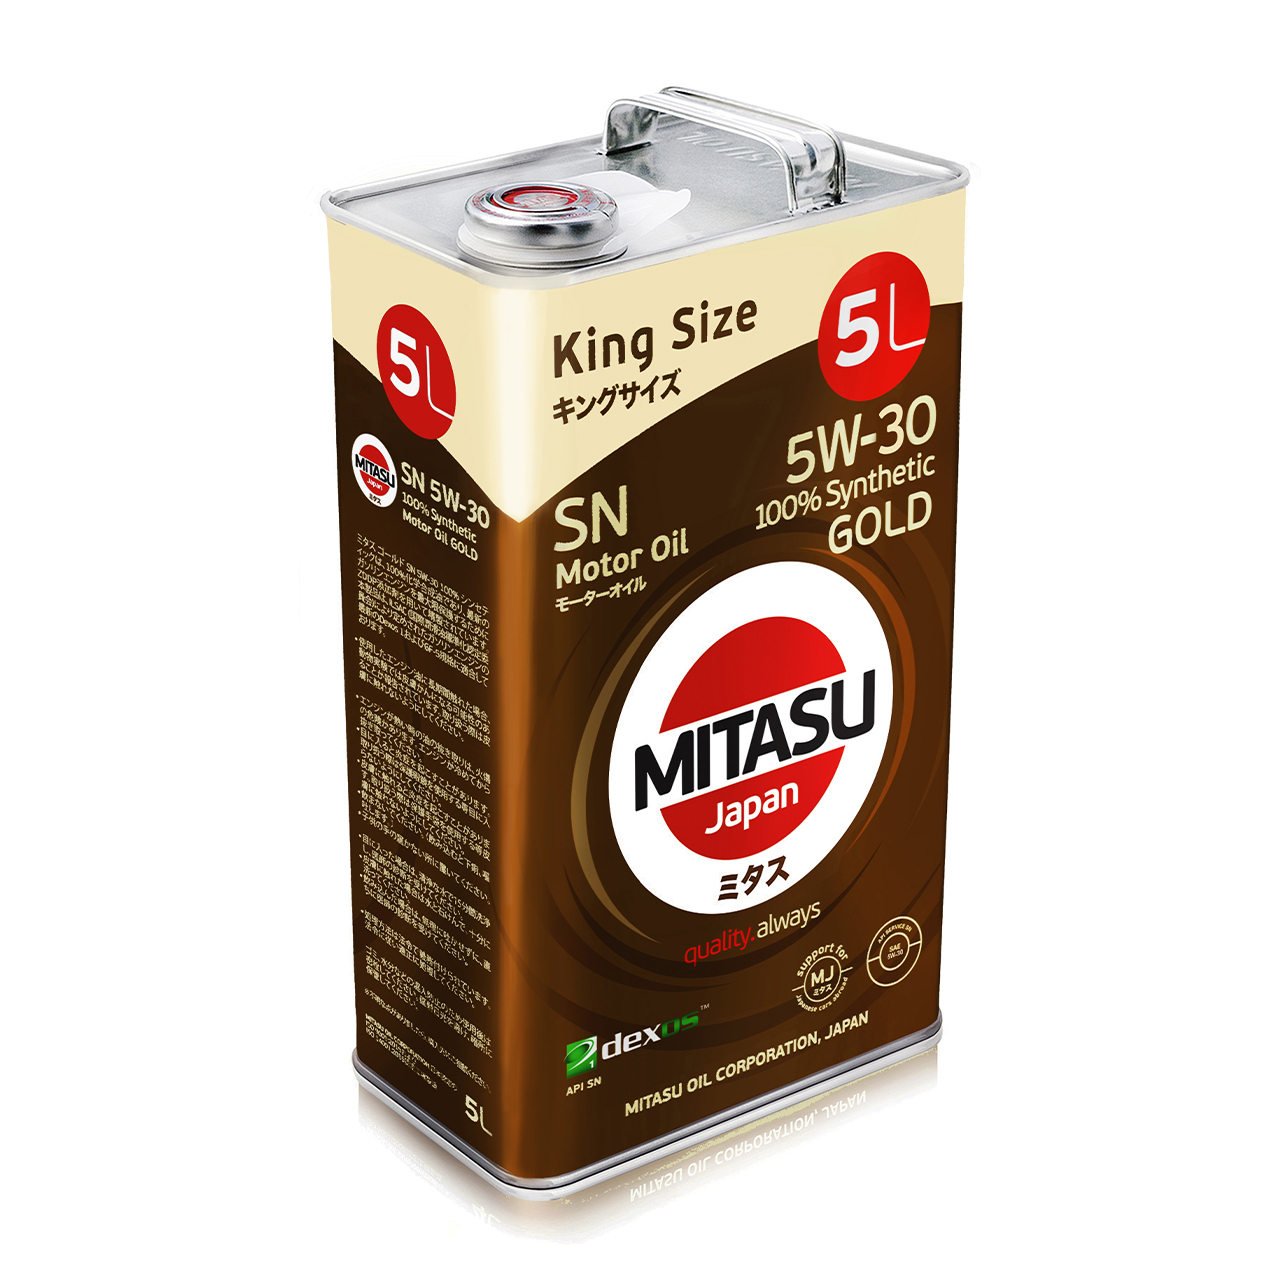 Купить запчасть MITASU - MJ1015 Масло моторное MITASU SN   5w30 5л  синтетическое для бензиновых двигателей MJ101  (1/6) Япония